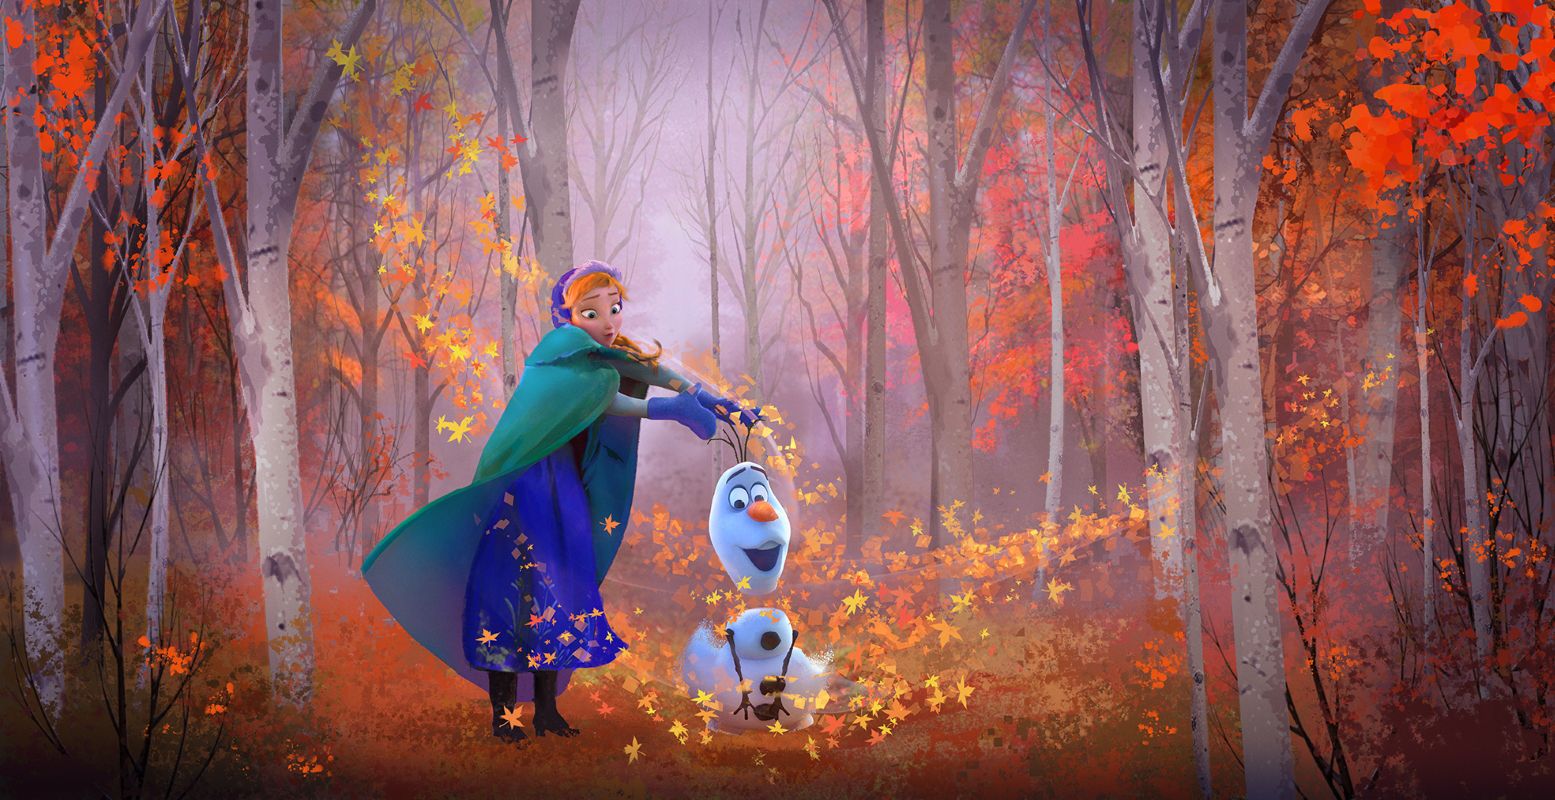 Concepttekening van Anna en Olaf uit Frozen, door Lisa Keene. Foto: Frozen 2, 2019 © Disney